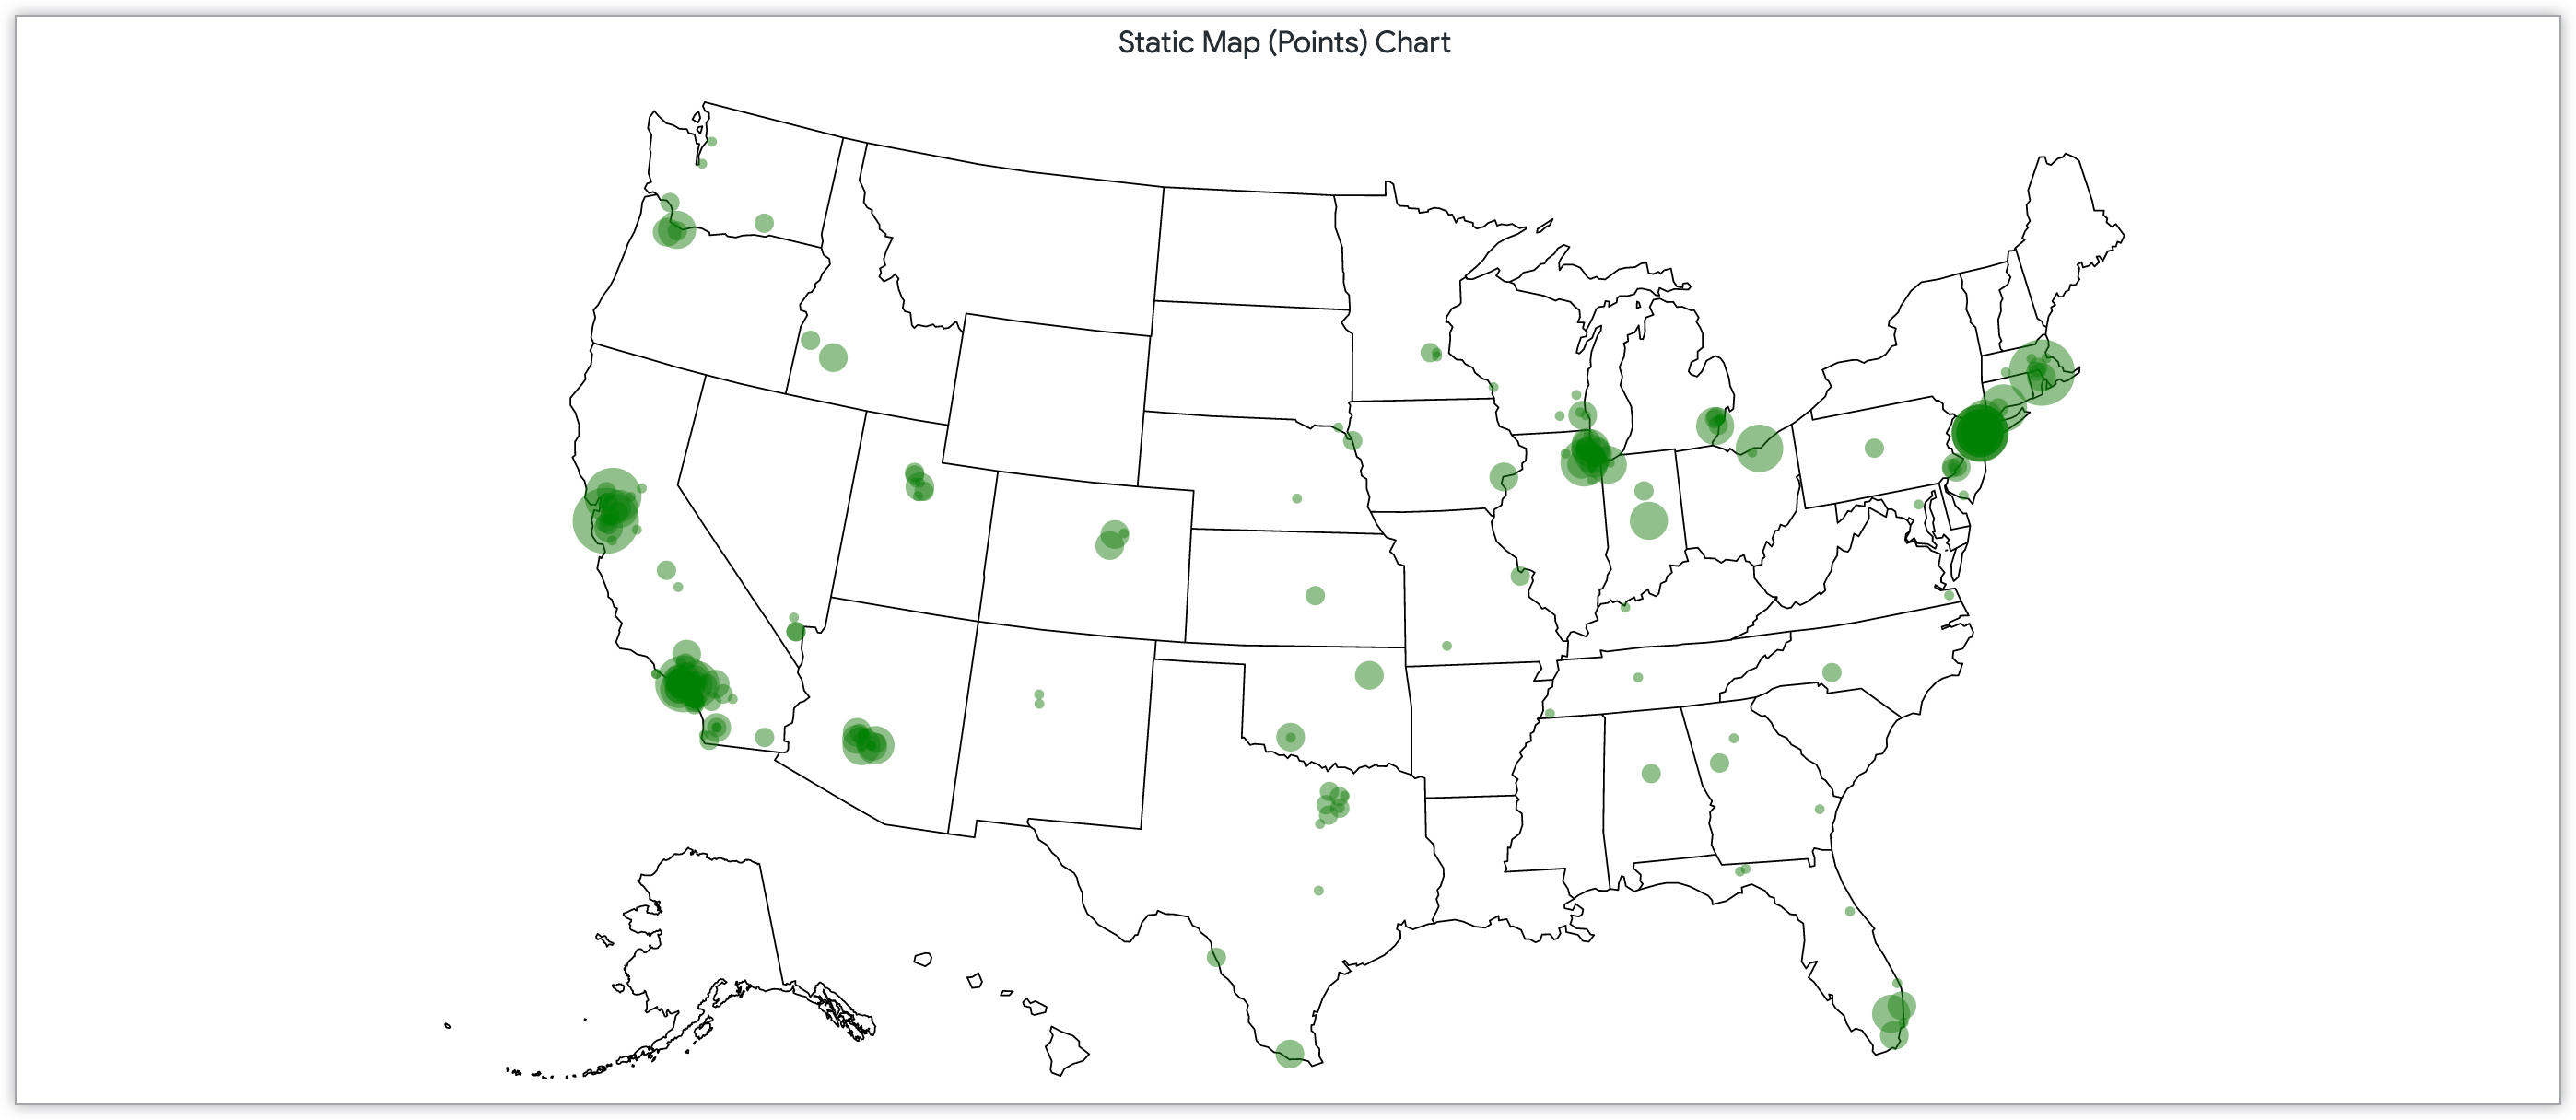 Gráfico de mapa estático com pontos dimensionados por quantidade de clientes em CEPs nos Estados Unidos.